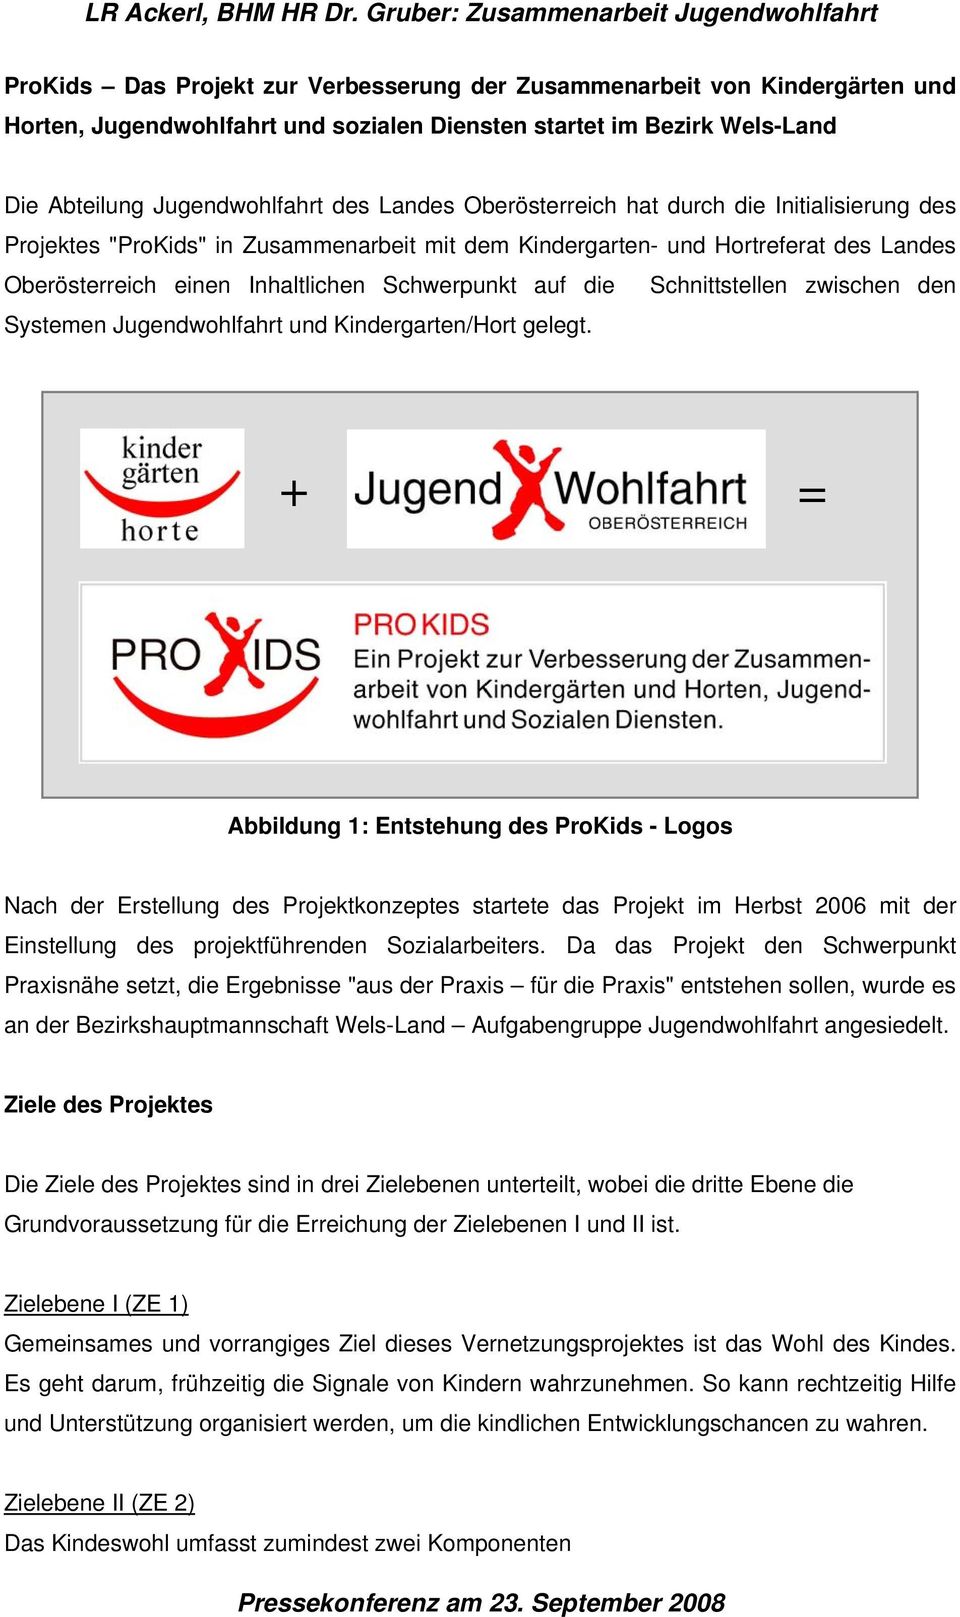 Abteilung Jugendwohlfahrt des Landes Oberösterreich hat durch die Initialisierung des Projektes "ProKids" in Zusammenarbeit mit dem Kindergarten- und Hortreferat des Landes Oberösterreich einen